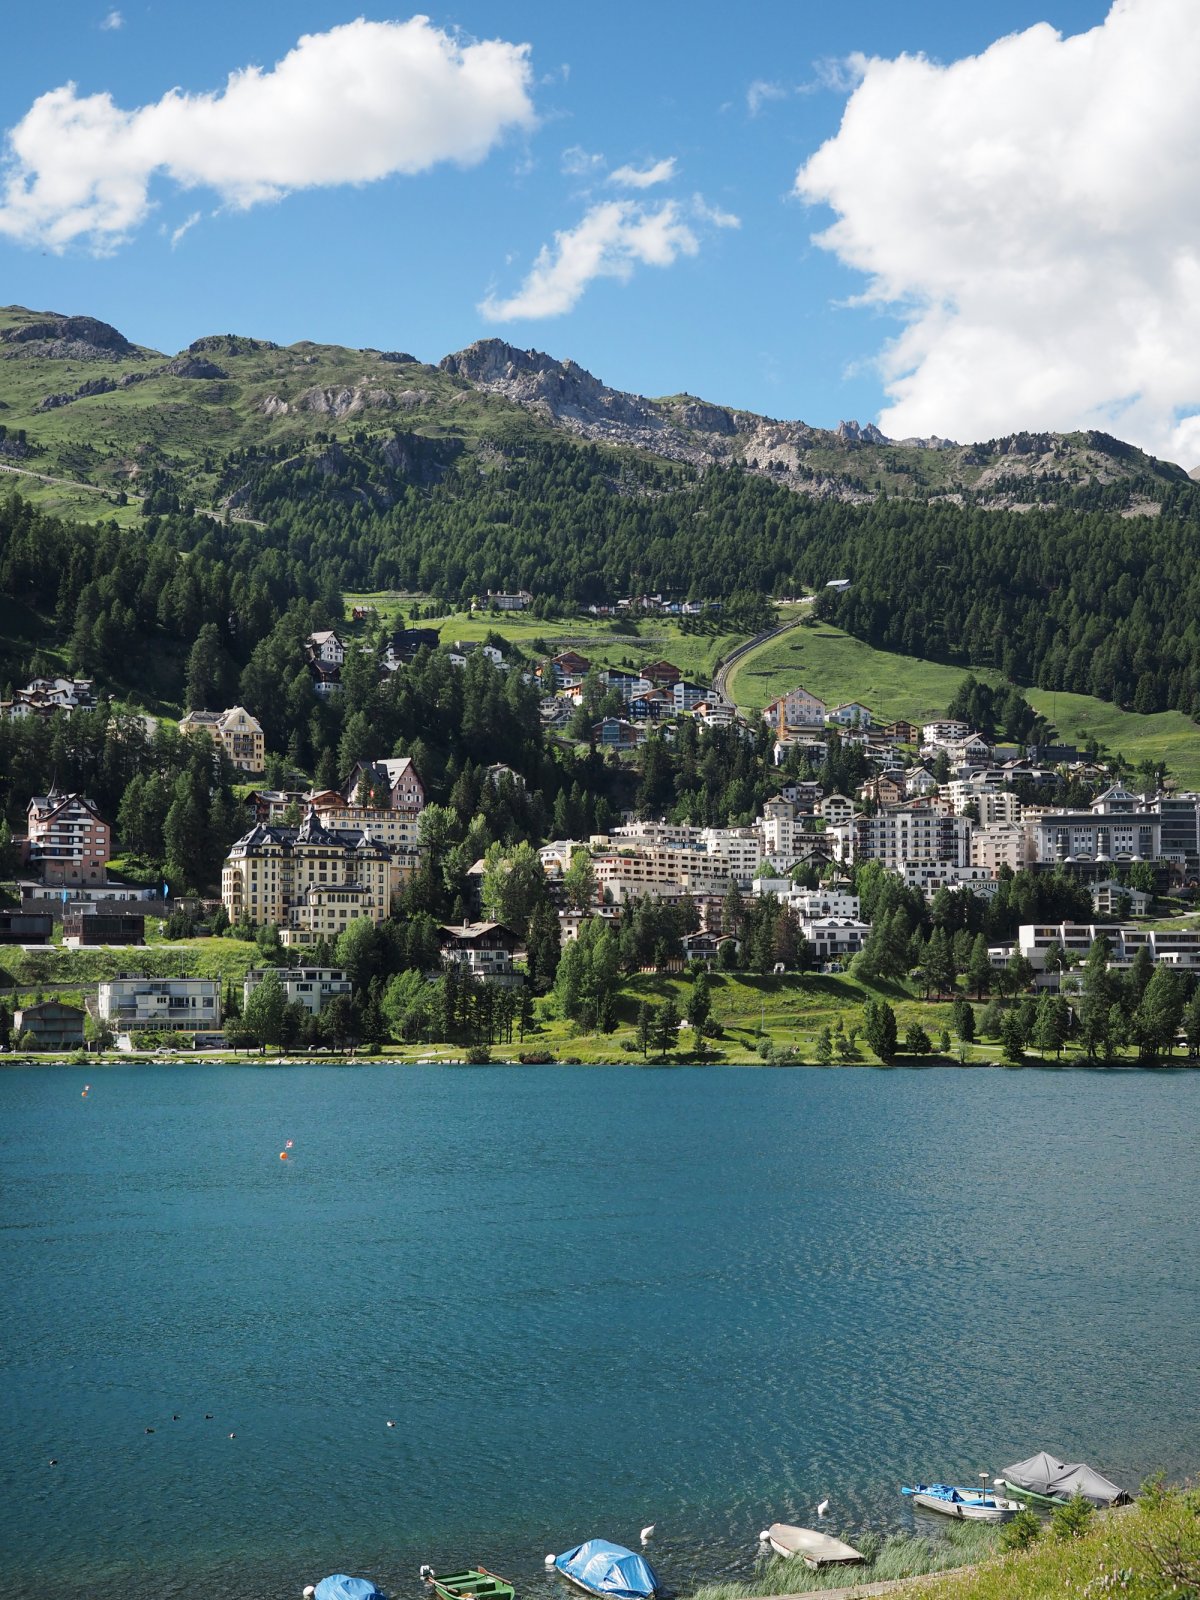 Lake St. Moritz during Summer 2022